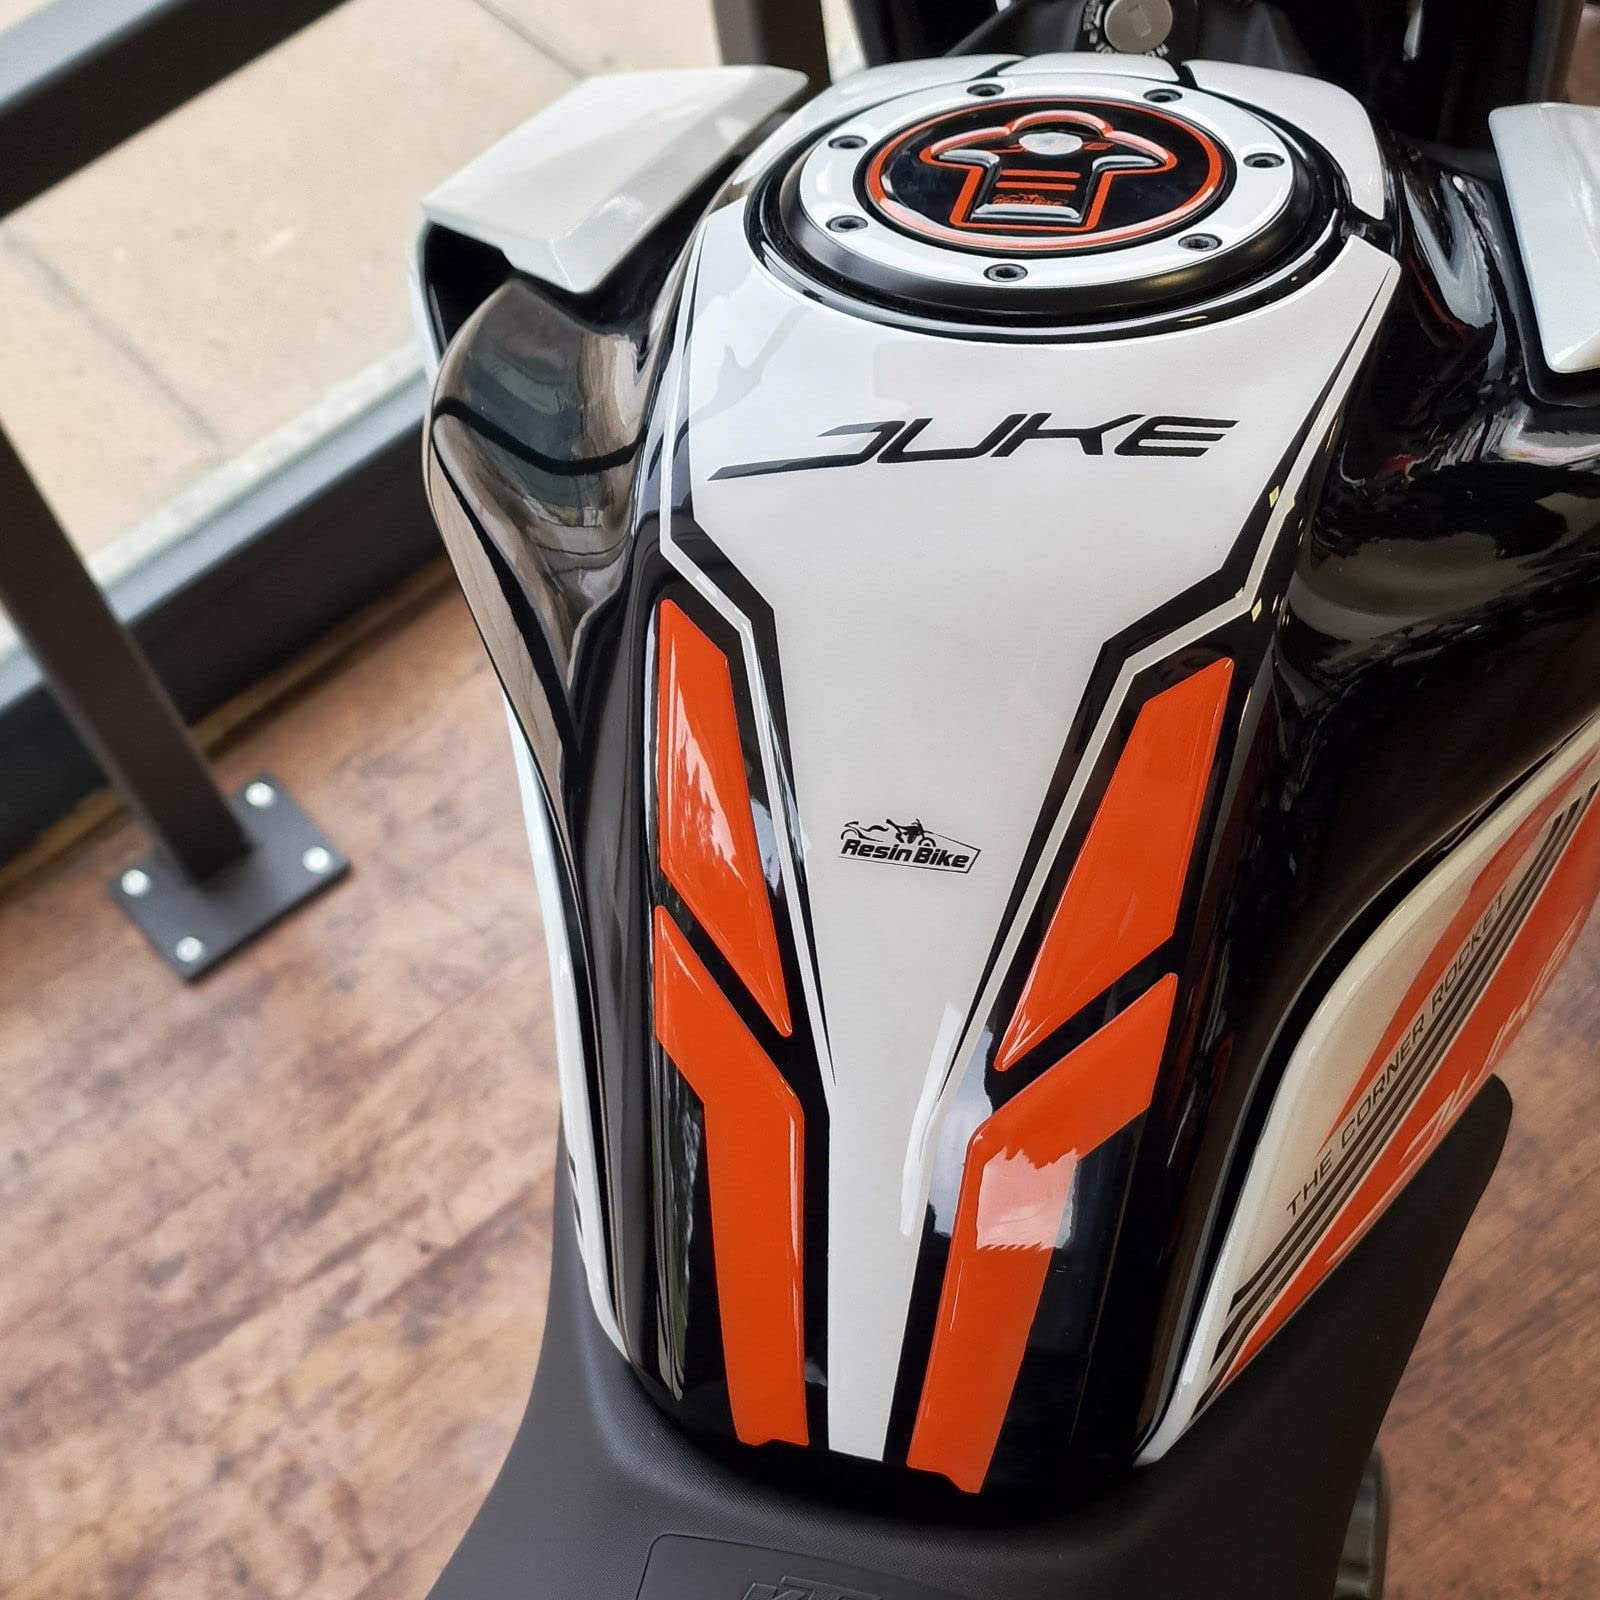 Resin Bike Aufkleber für Motorrad Kompatibel mit KTM Duke 200 390 2021-2022 Weiße. Tankabdeckung vor Stößen und Kratzern. 3D-Harzklebstoff - Stickers - Made in Italy von Resin Bike